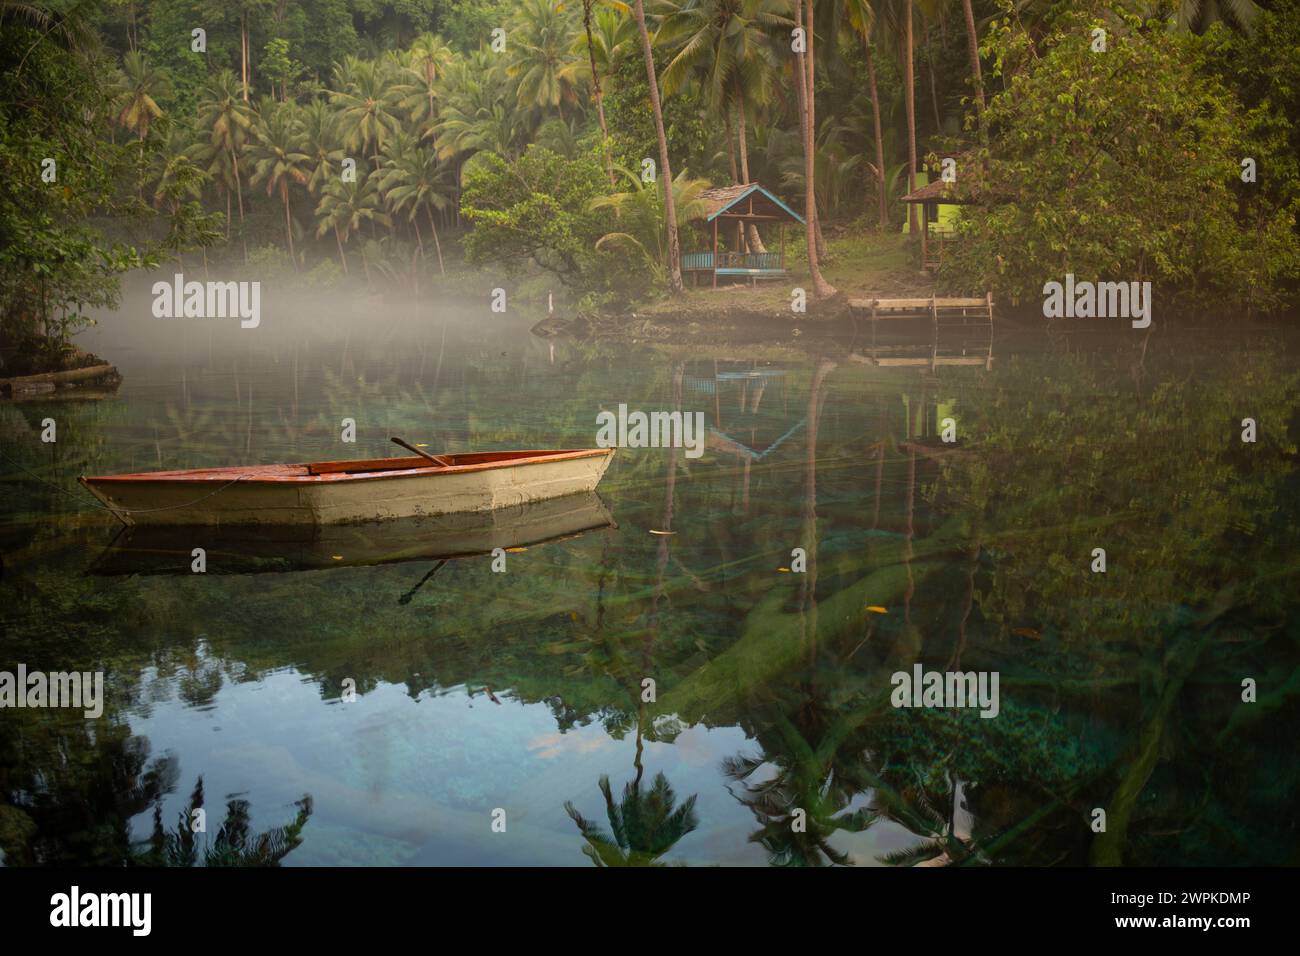 Boat at the Paisu Pok Lake, Banggai, Sulawesi, Indonesia. Stock Photo